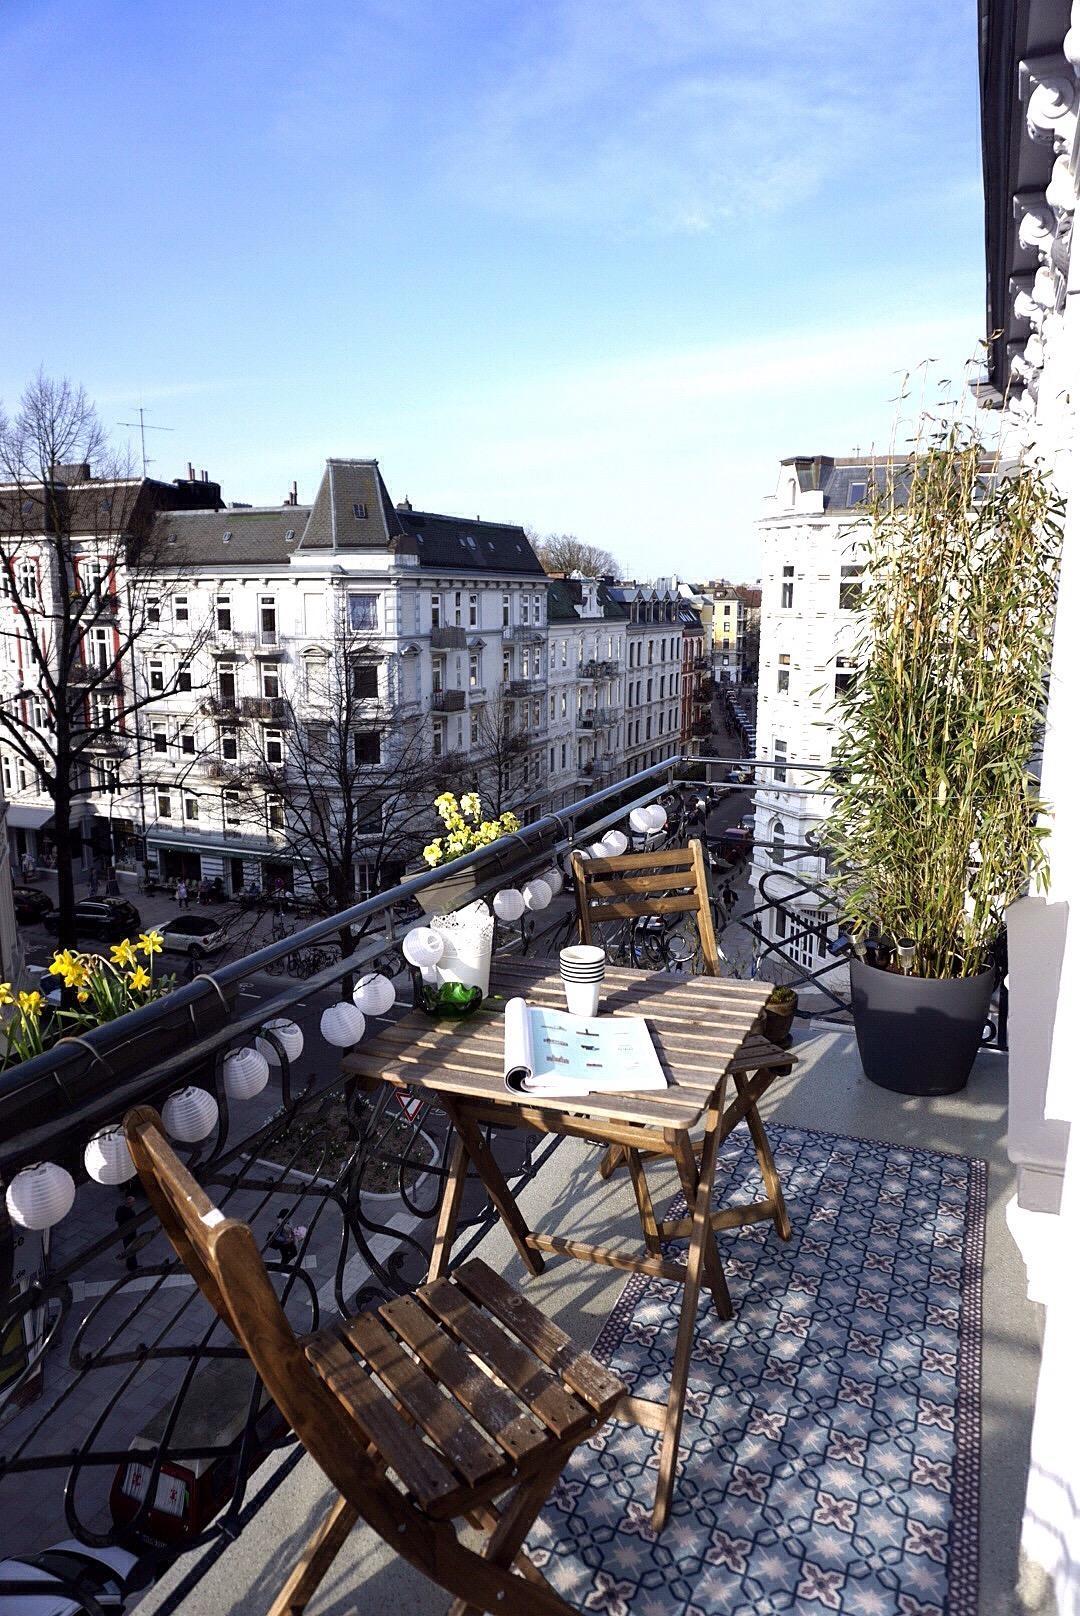 Liebe Sonne, komm zurück! Freue mich schon, den #Outdoorteppich auszurollen & den #Balkon sommerfit zu machen! #Altbau